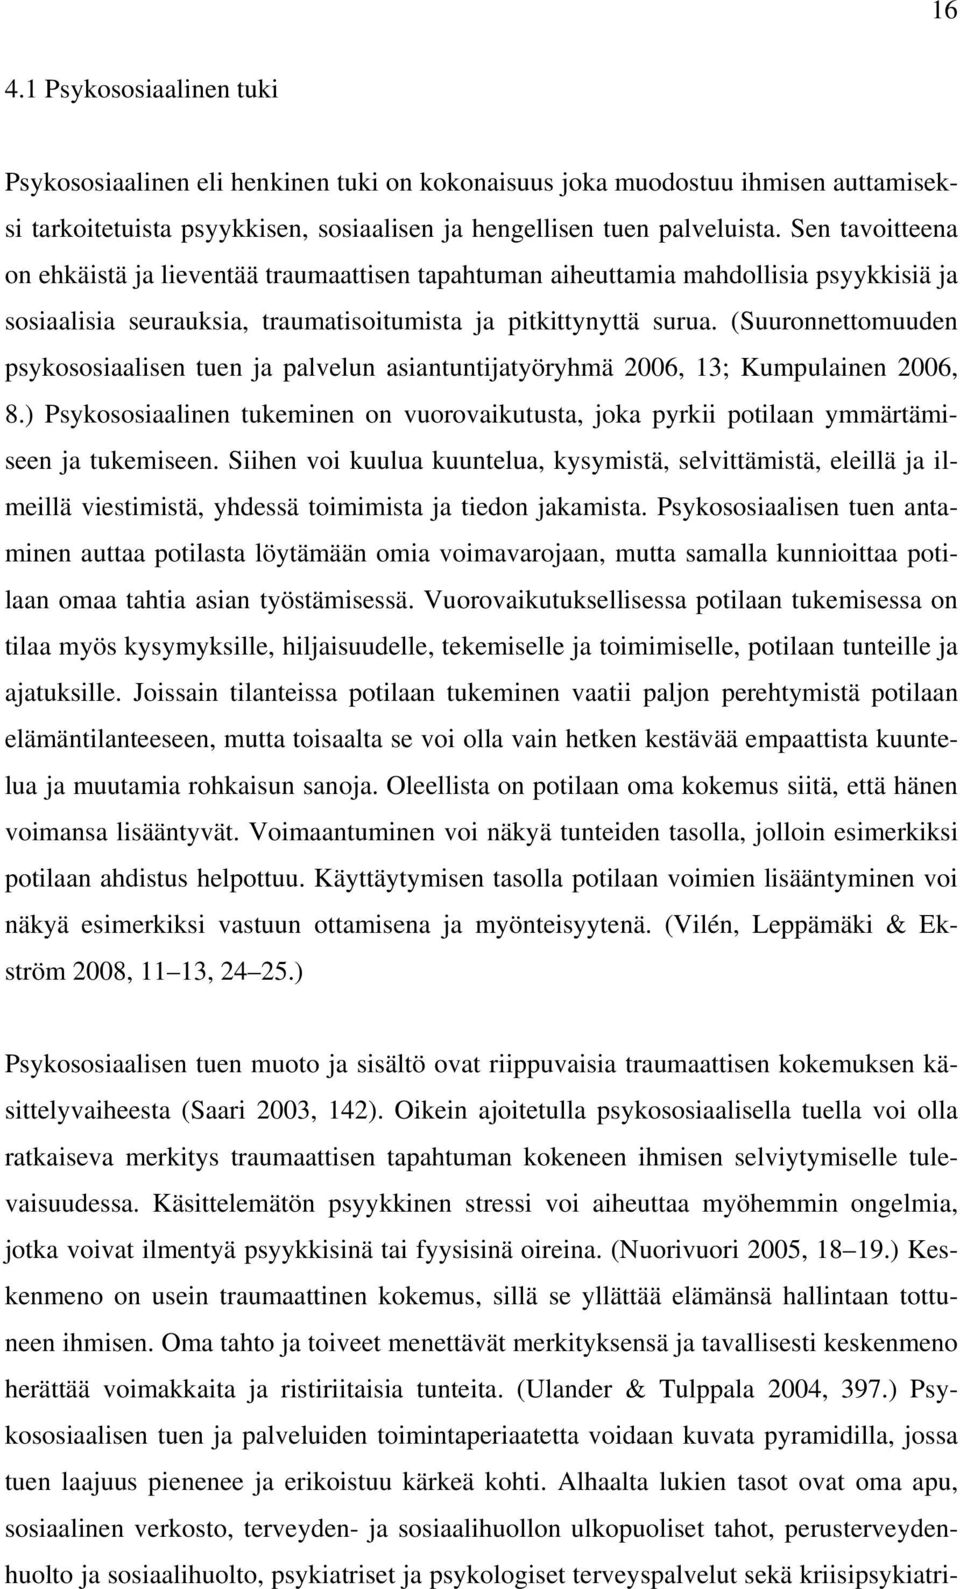 (Suuronnettomuuden psykososiaalisen tuen ja palvelun asiantuntijatyöryhmä 2006, 13; Kumpulainen 2006, 8.